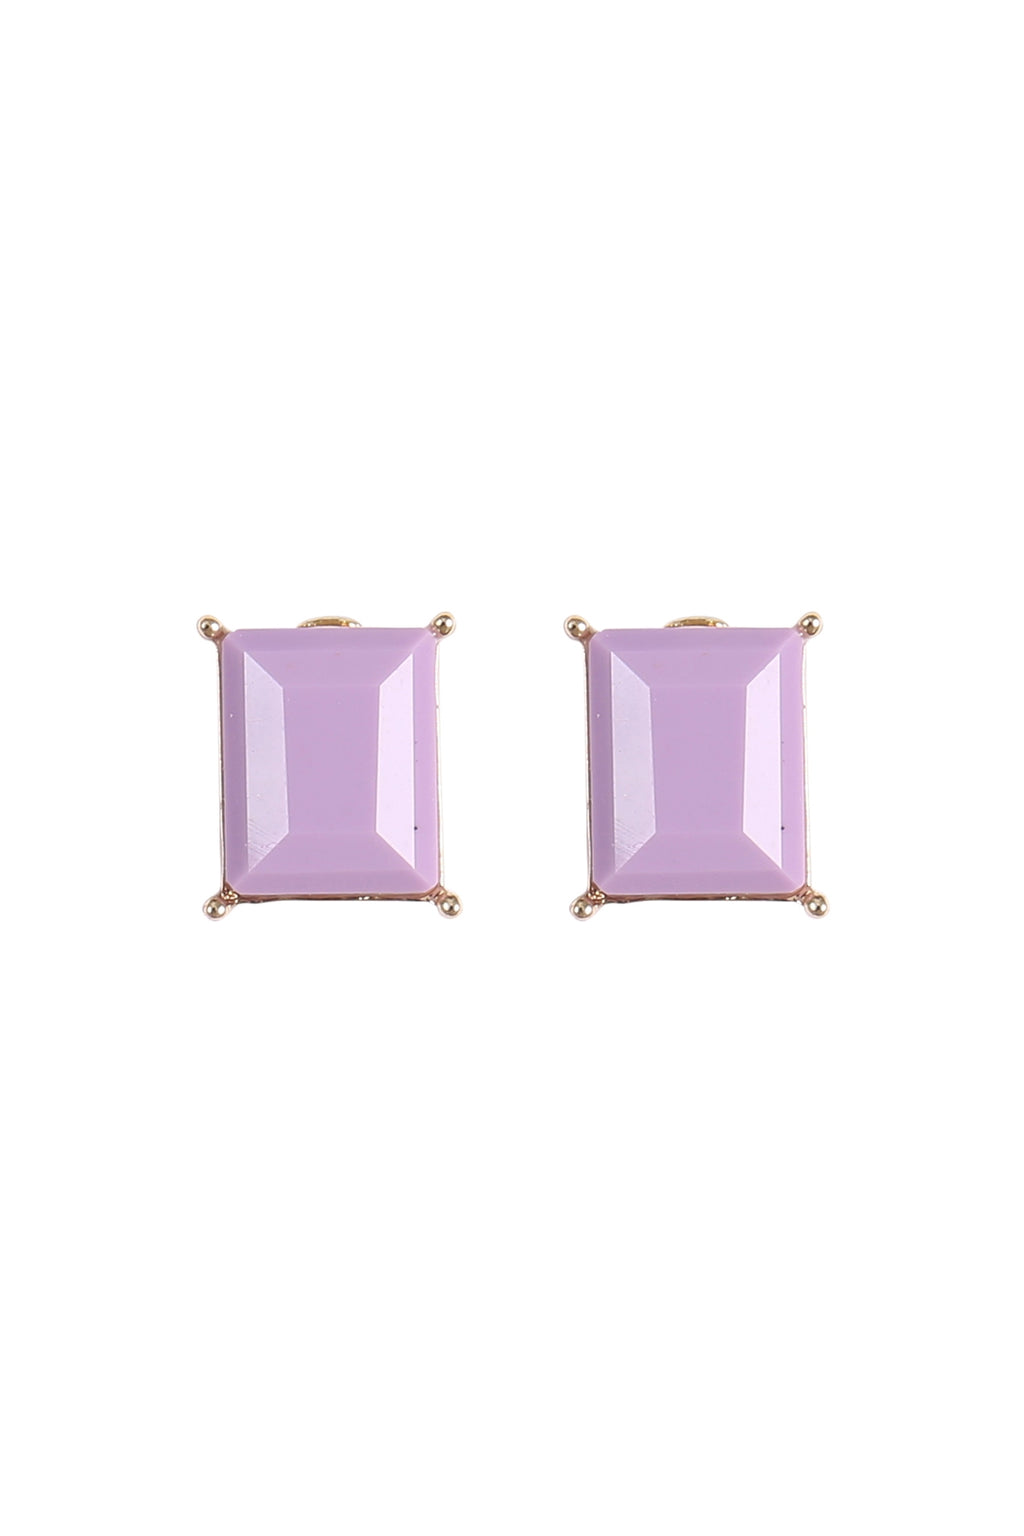 Rectangle Resin Stone Stud Earrings Lavender - Pack of 6